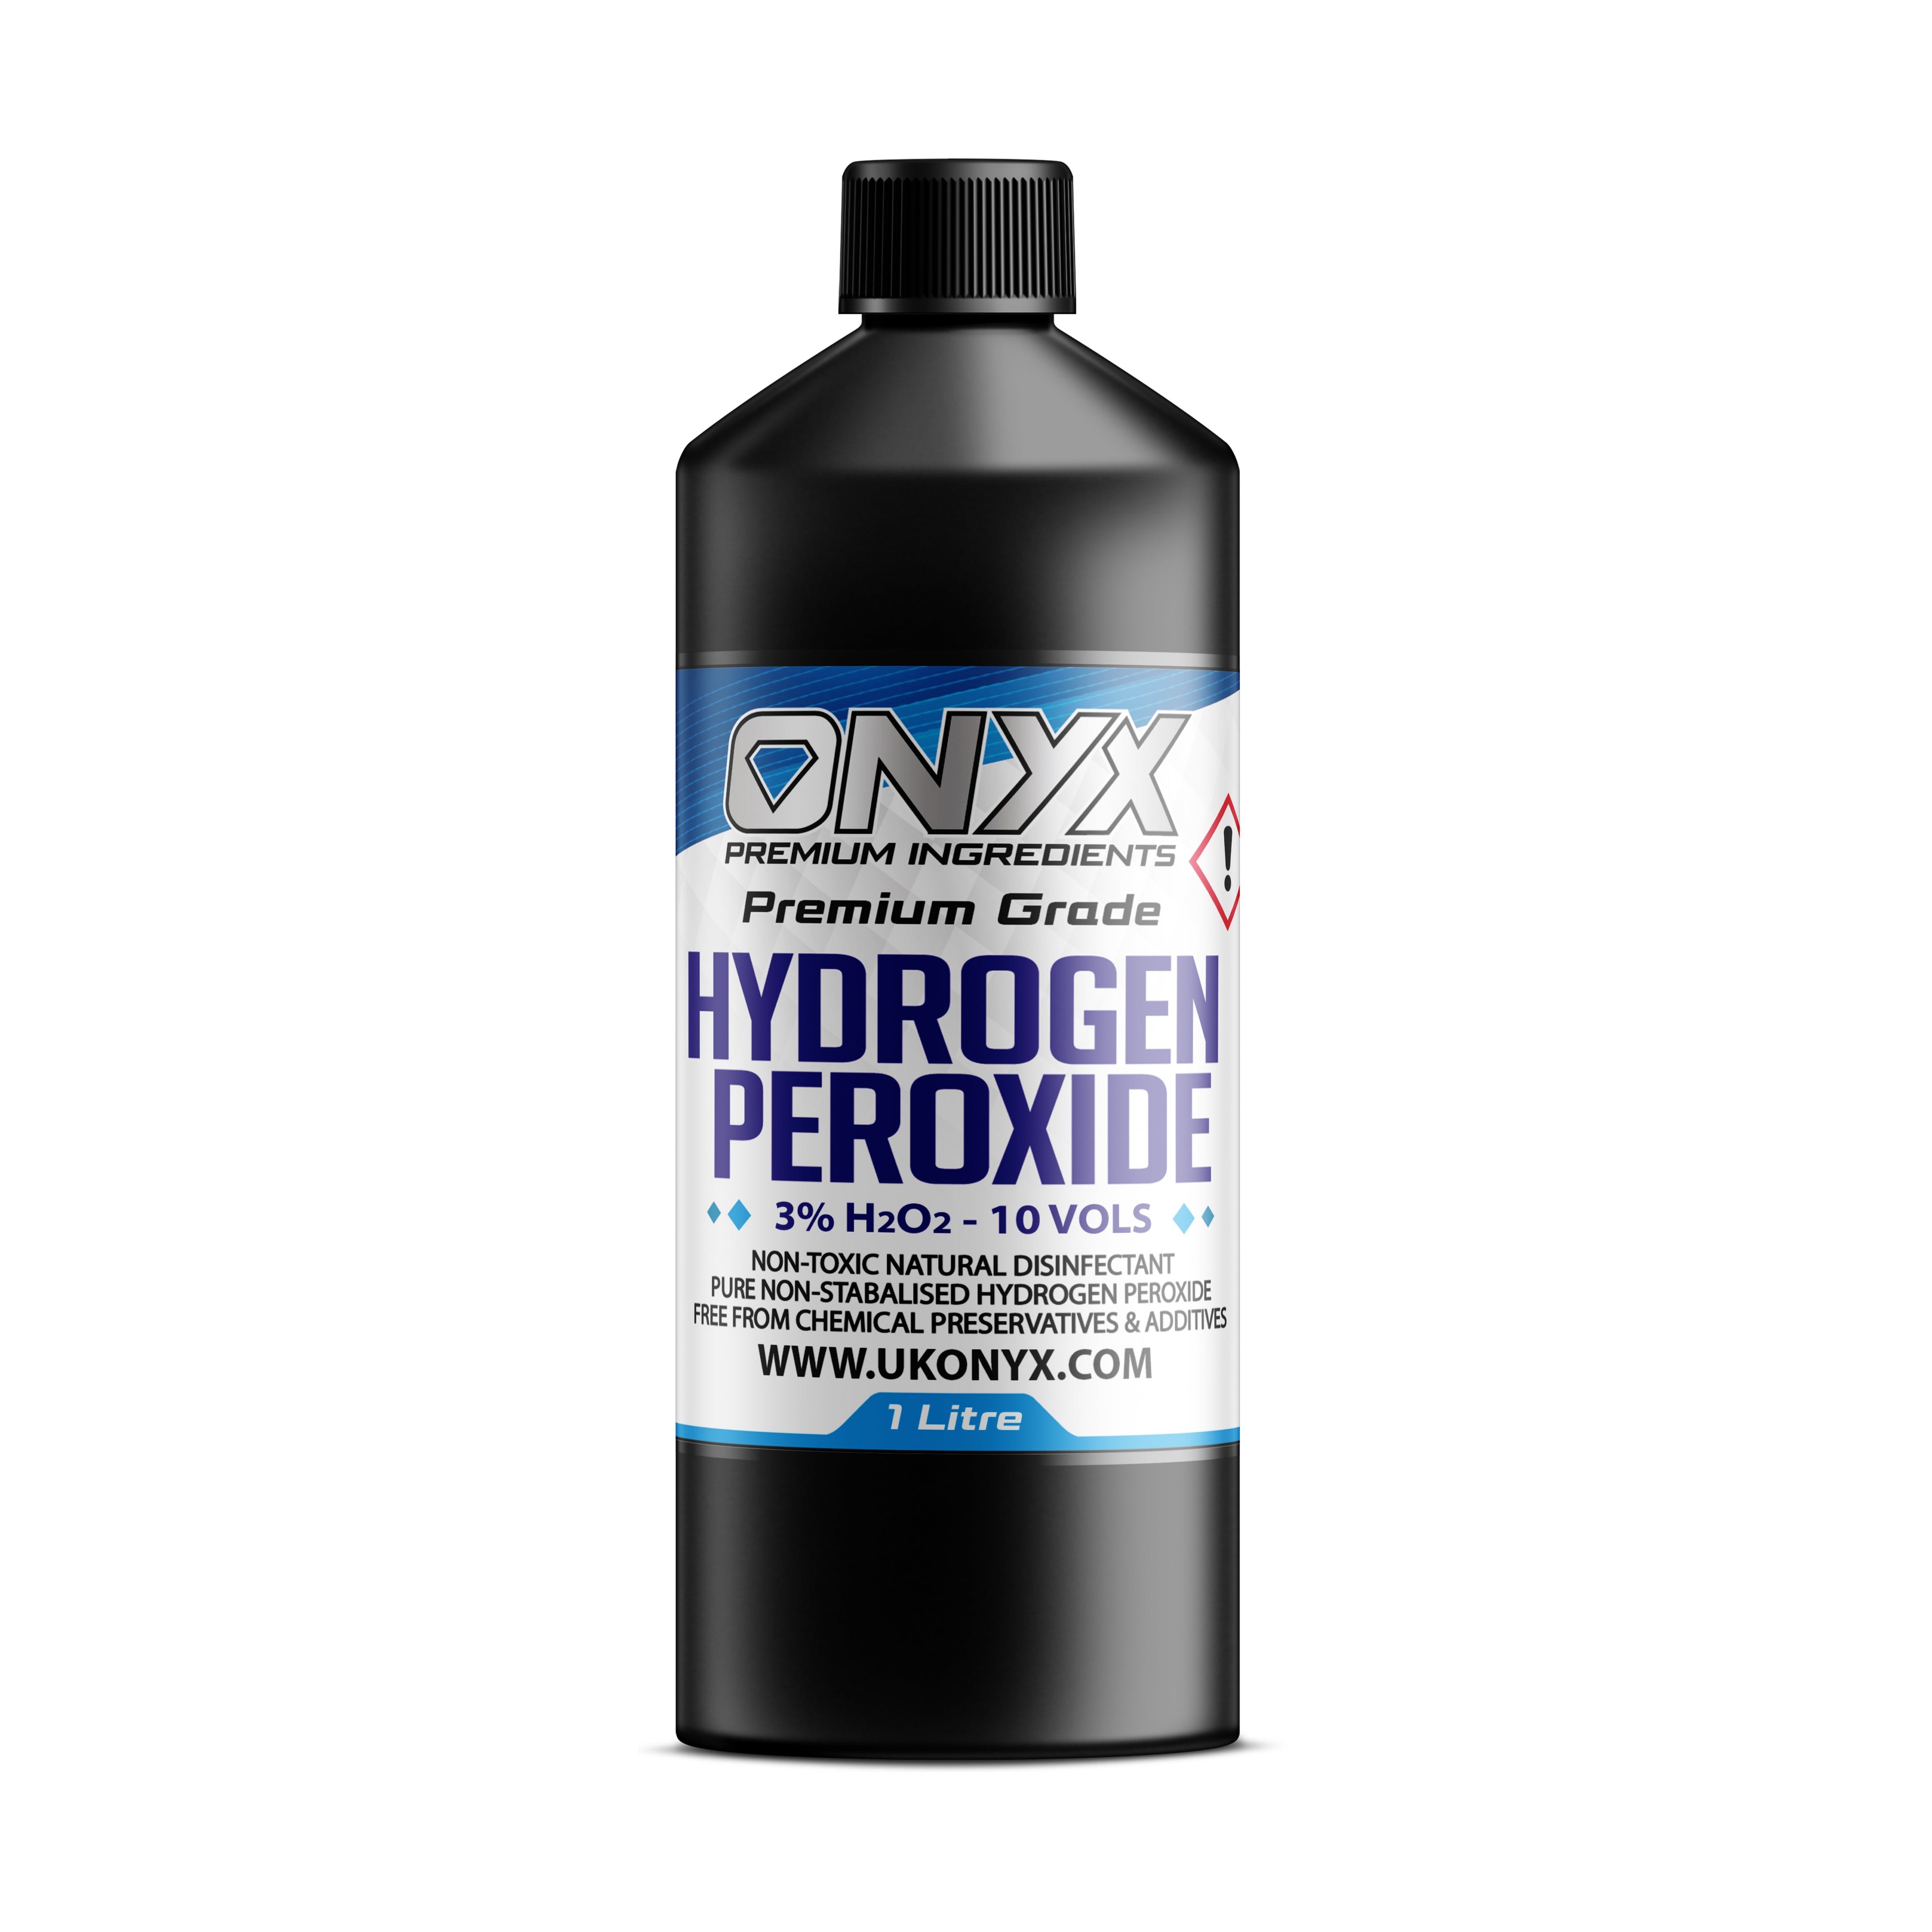 Hydrogen Peroxide Pure Food Grade 3%, 10 Vols. Non-Toxic Natural Disinfectant